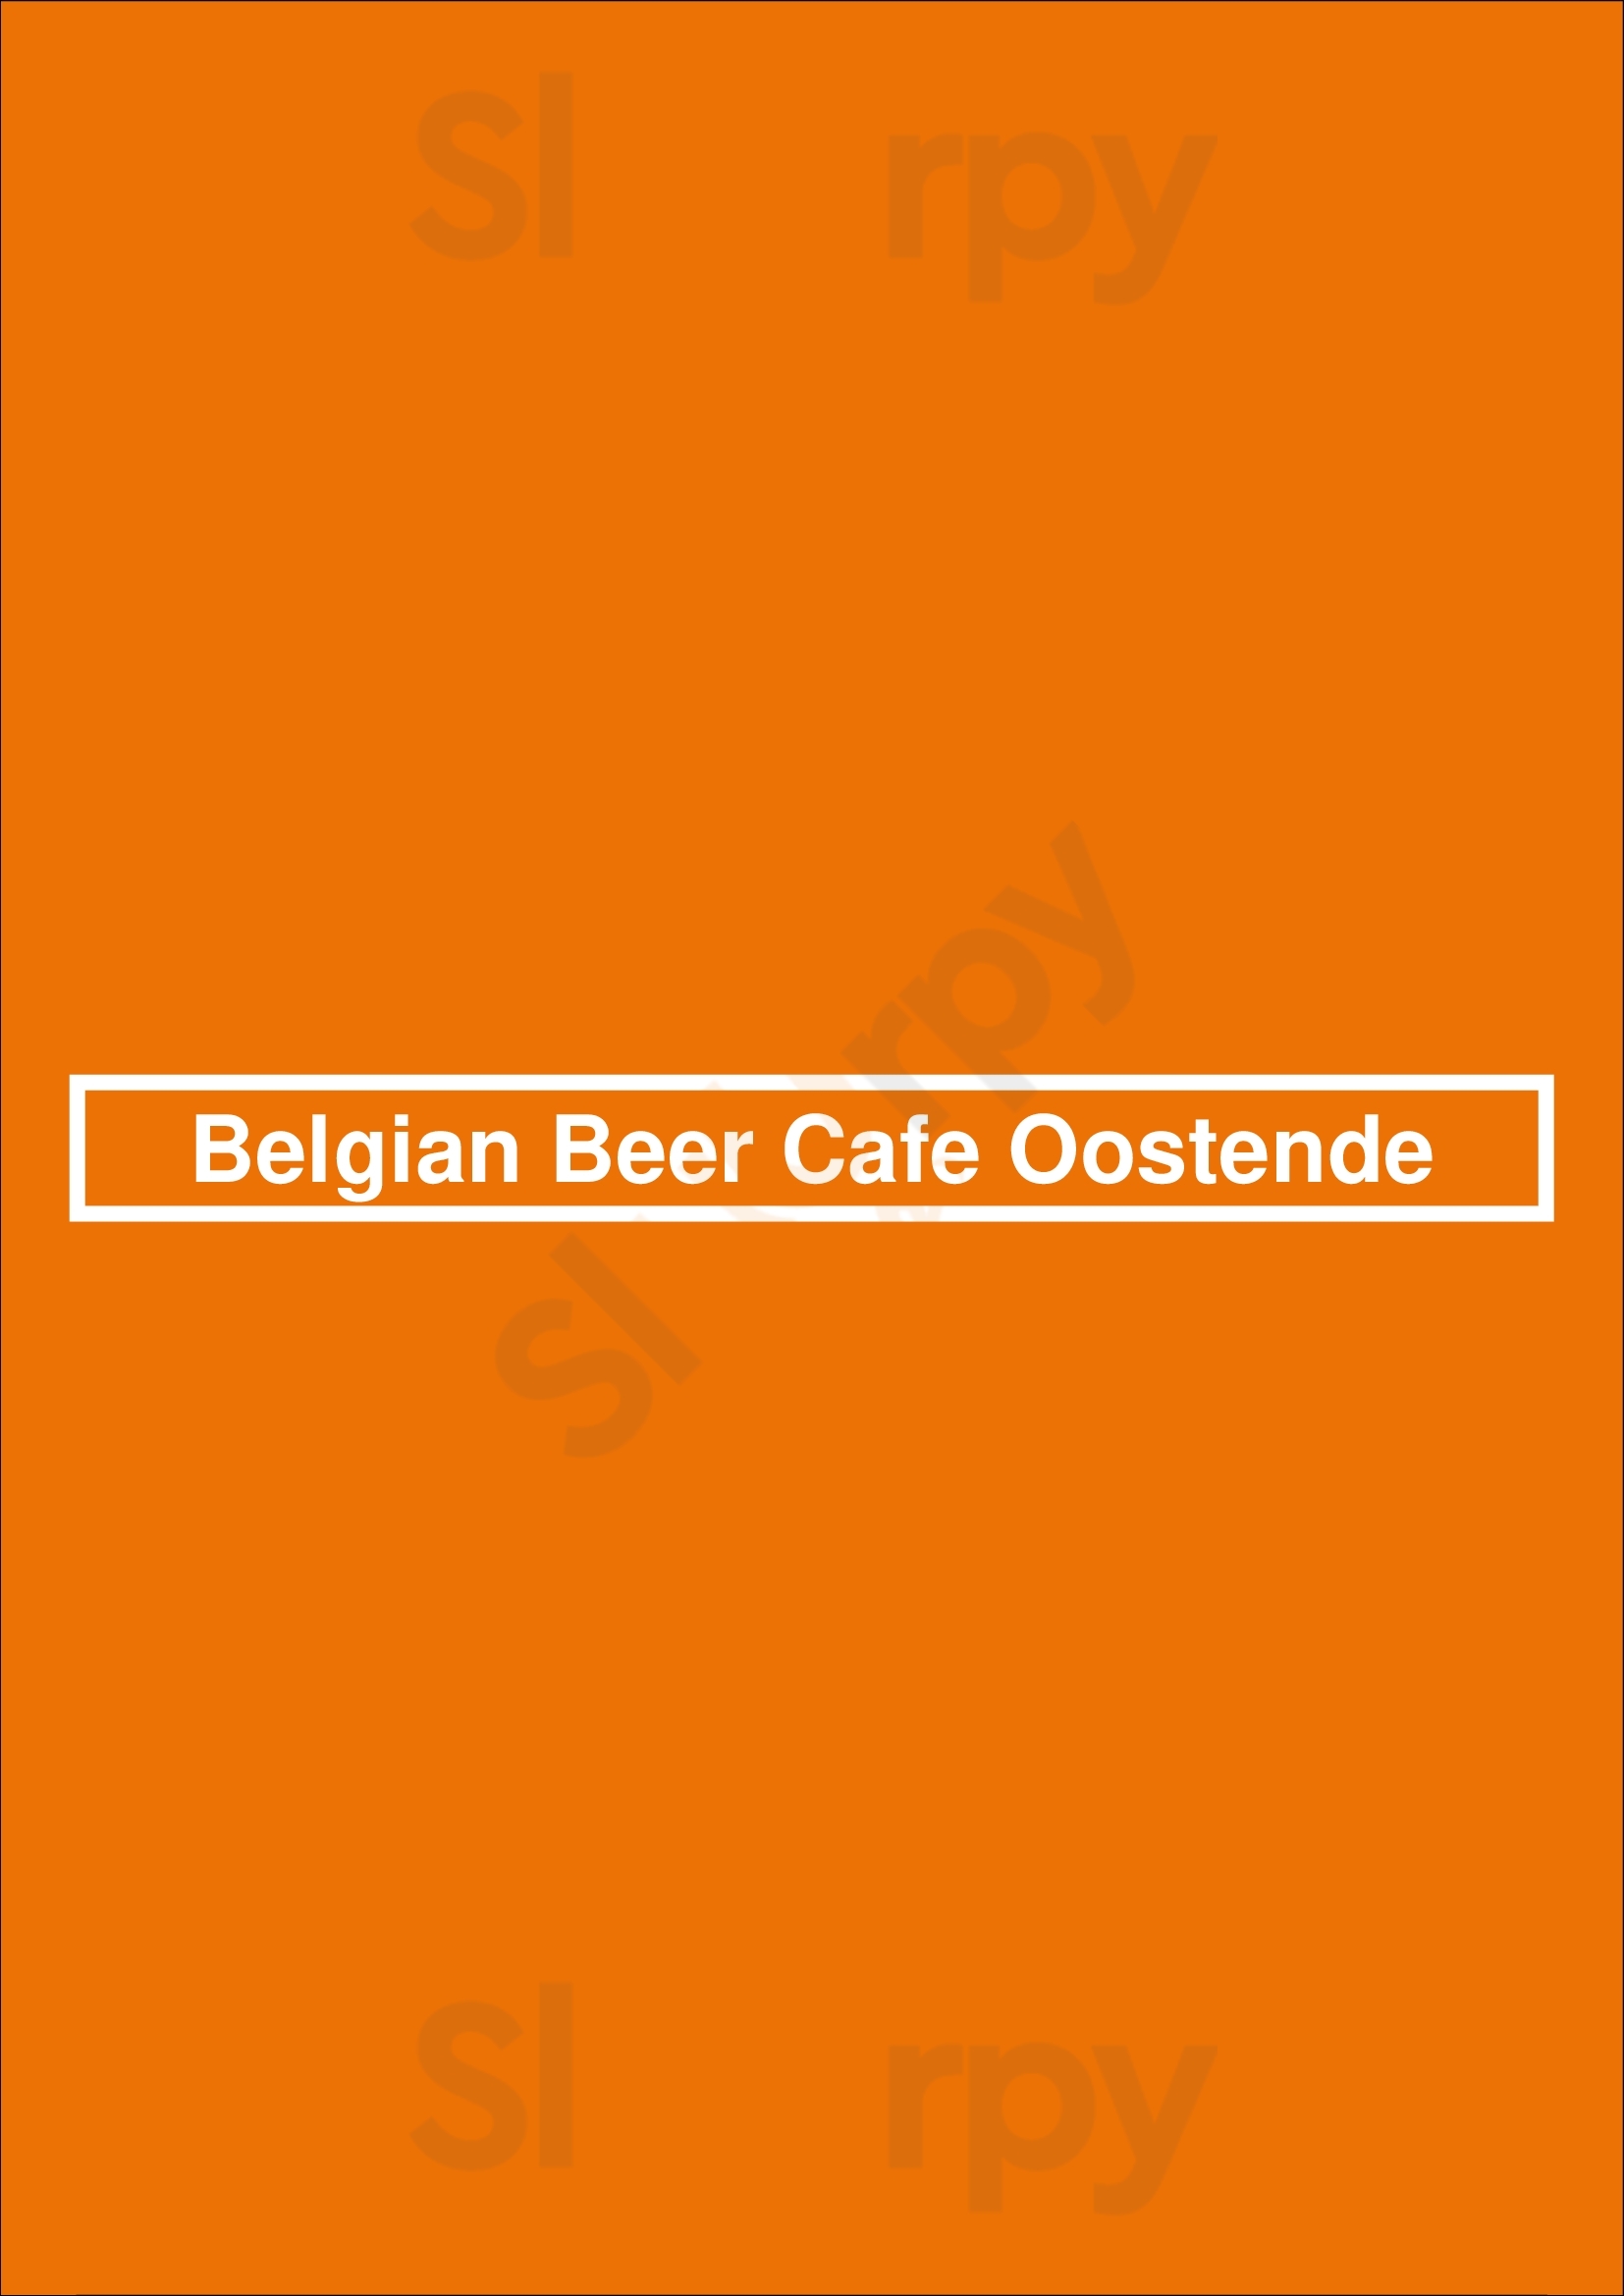 Belgian Beer Cafe Adelaide Menu - 1